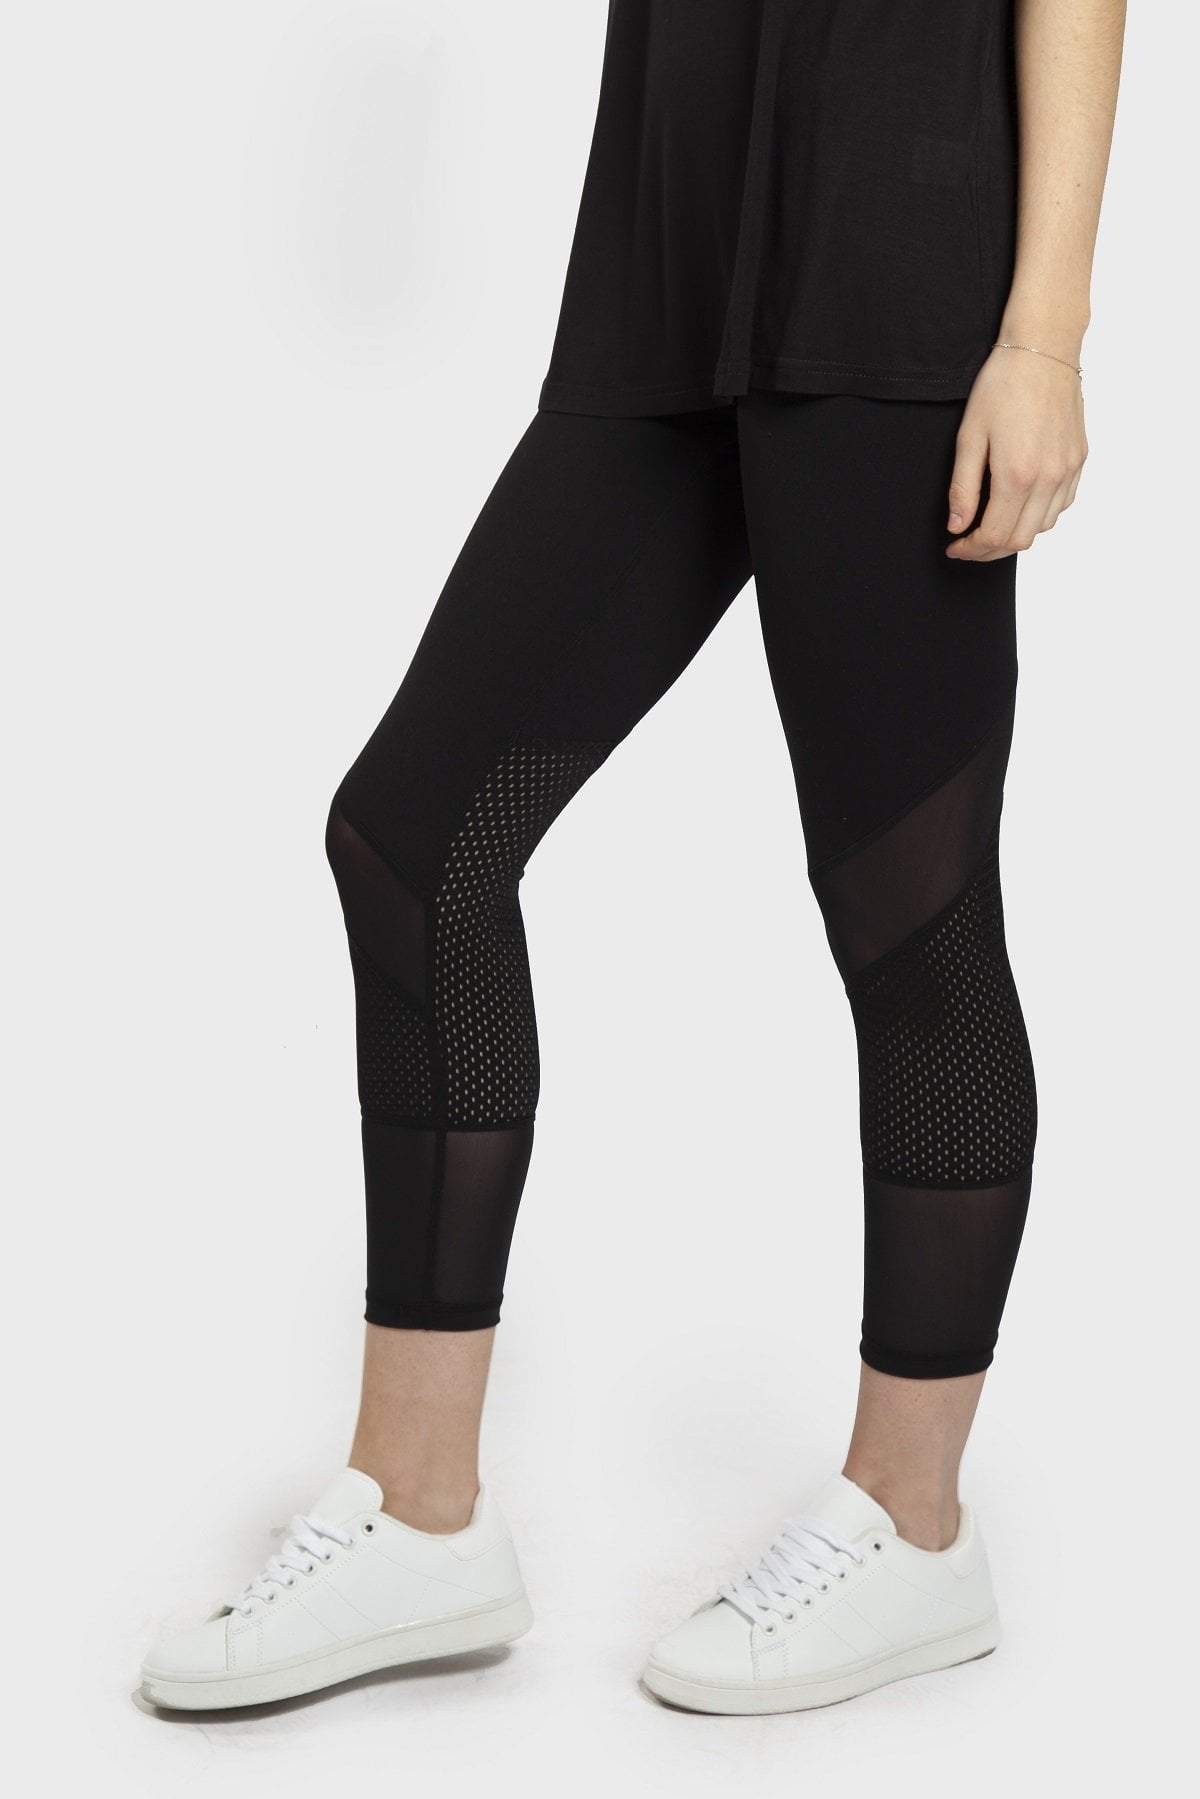 Dual Mesh Panel Pattern Legging - Black - Be Activewear